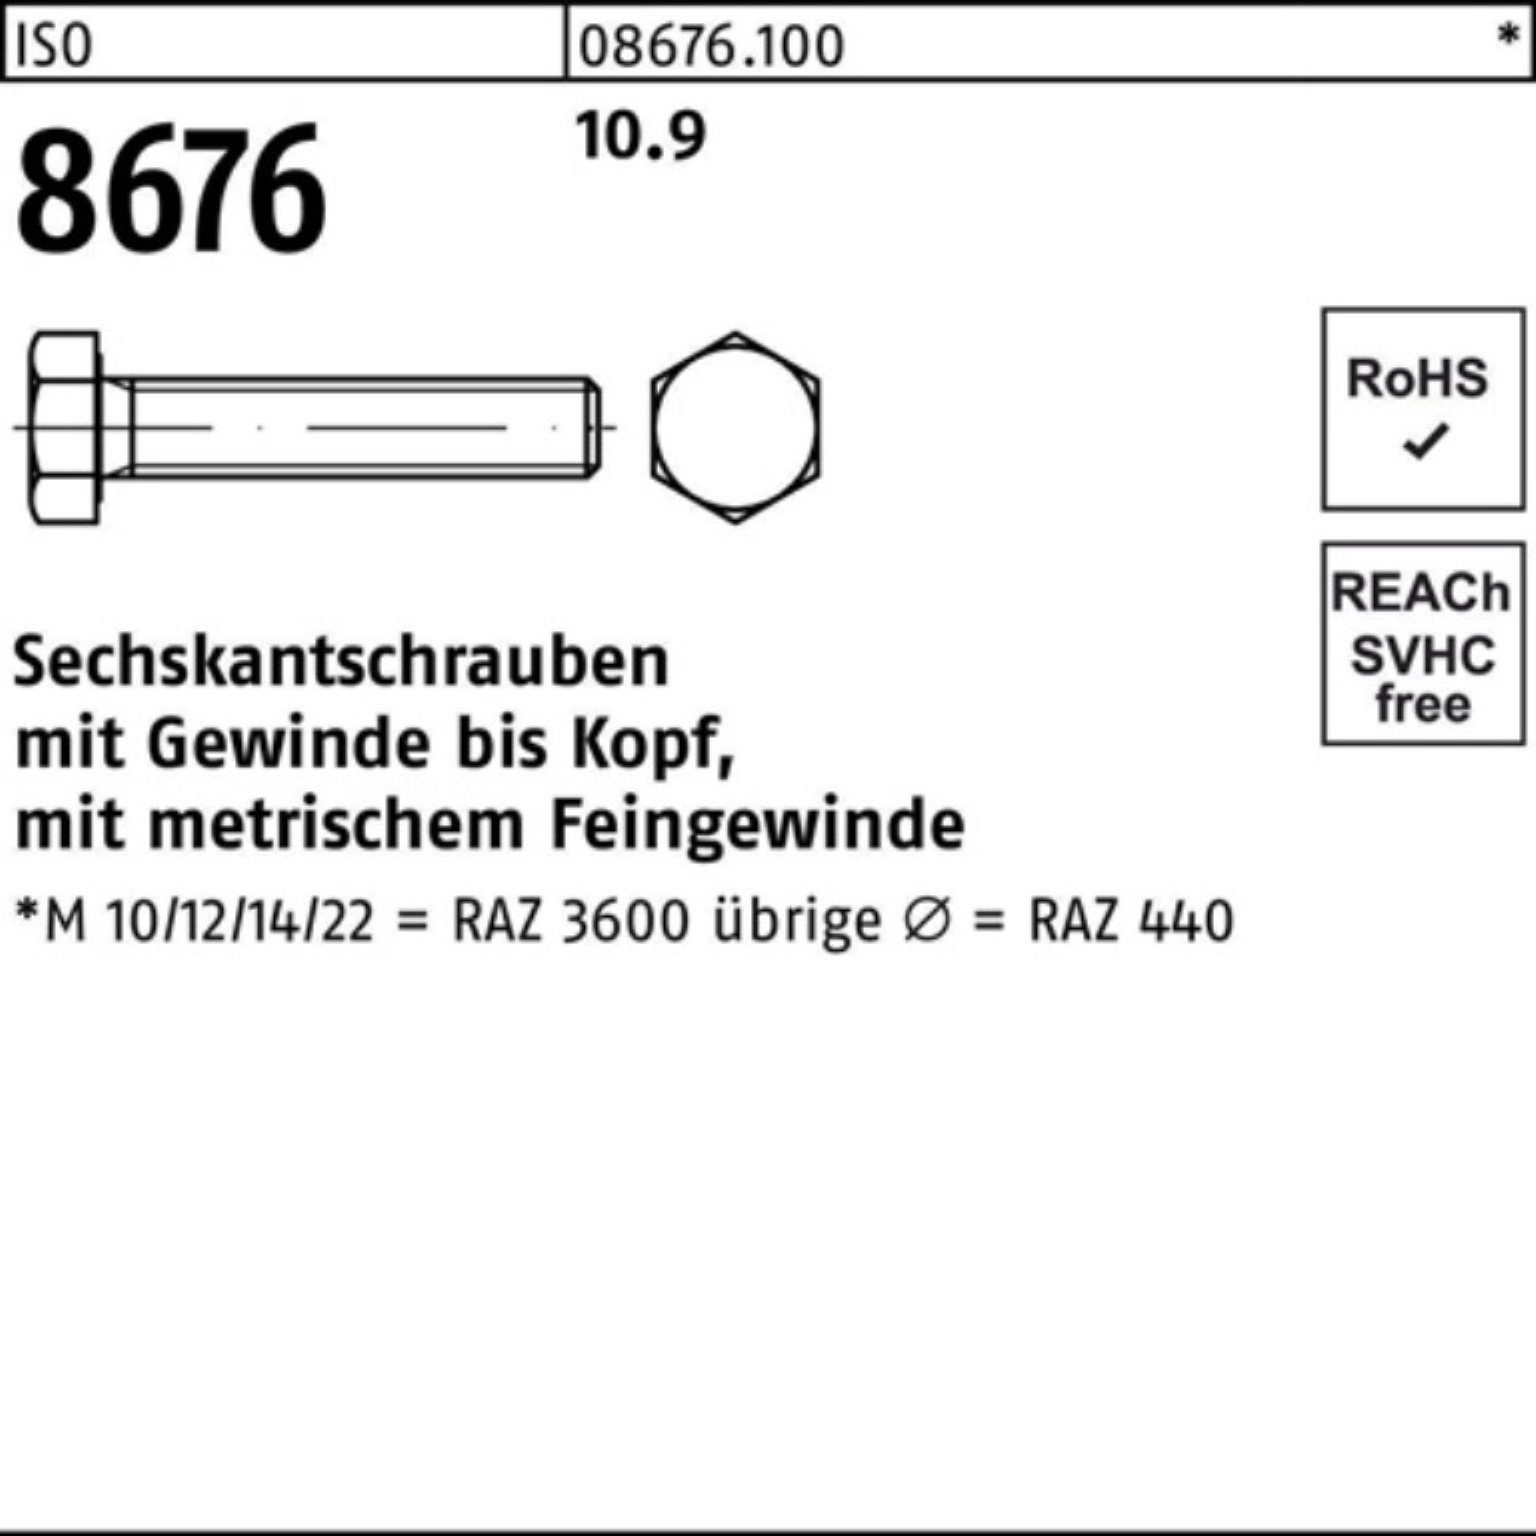 IS VG 10 Sechskantschraube 8676 Reyher 10.9 100er Stück ISO Pack Sechskantschraube M24x1,5x130